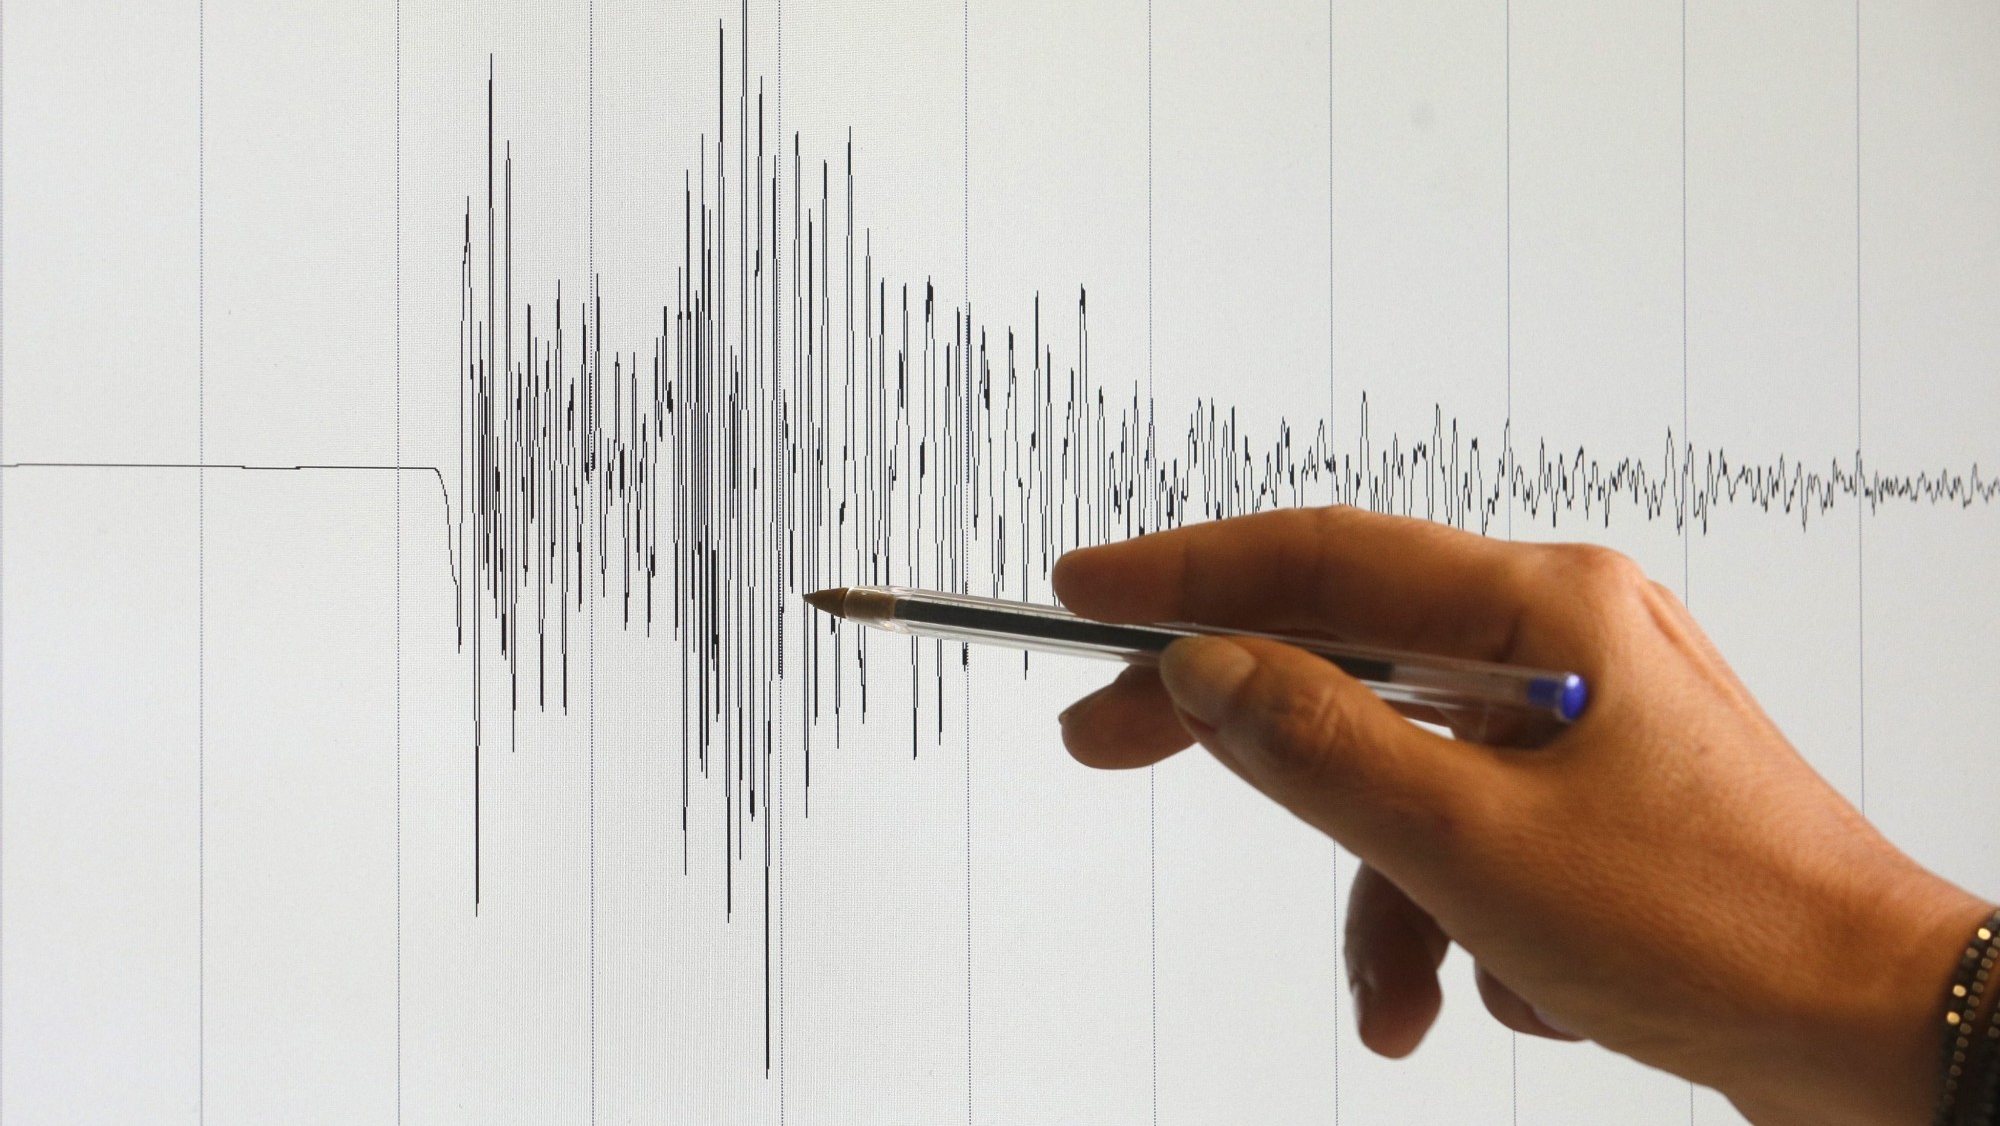 Proteção Civil defende atualização de estudo de risco sísmico do Algarve datado de 2009